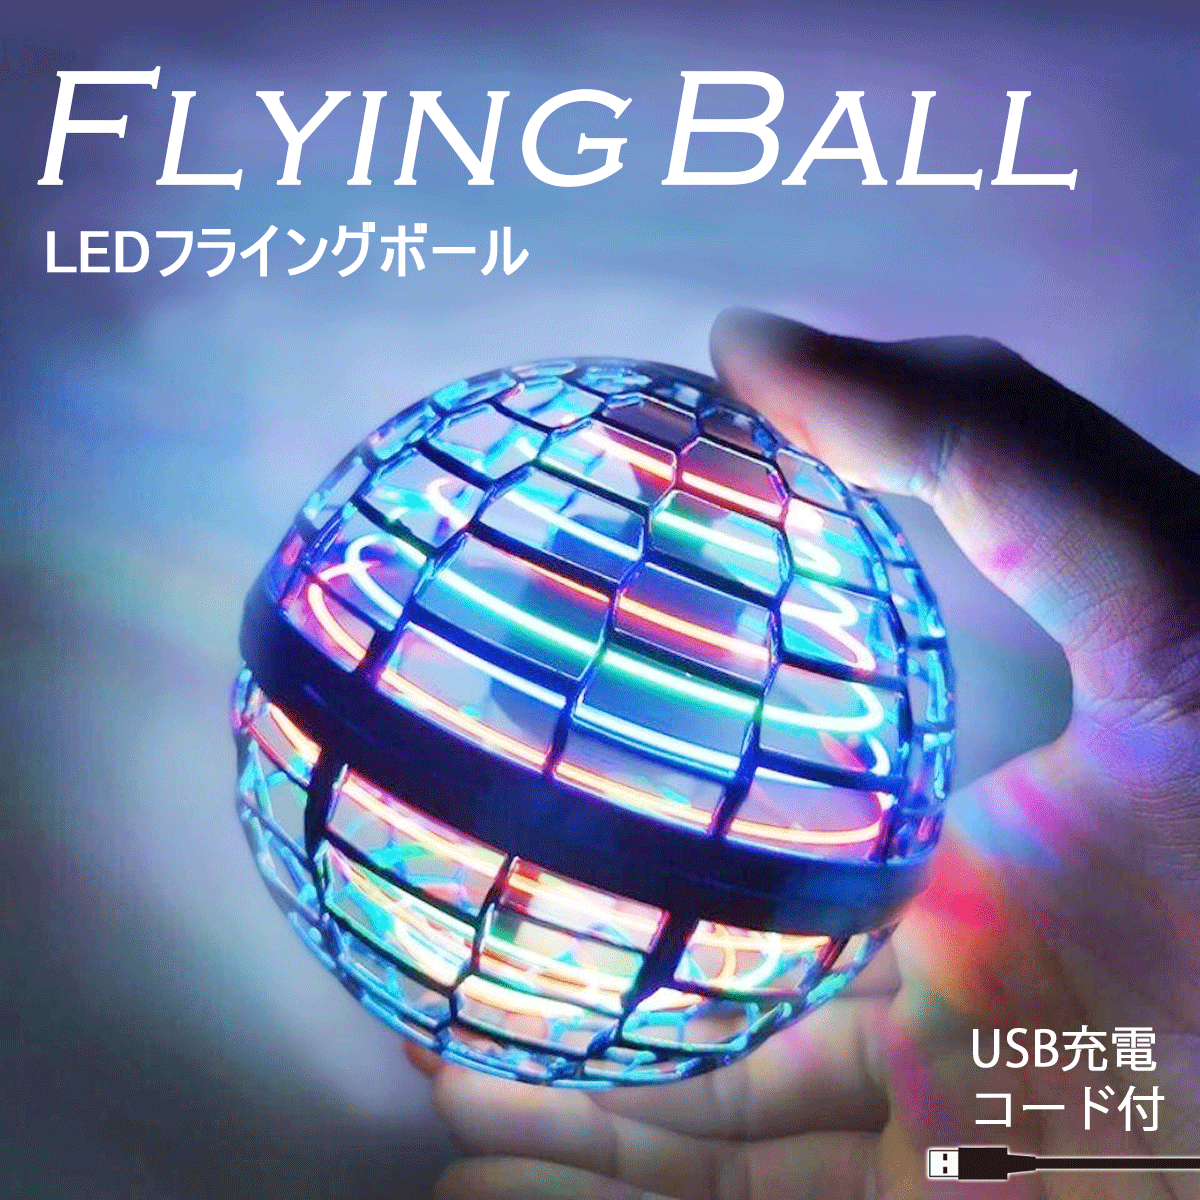 ミニドローン おもちゃ 評判 フライングボール 飛行ボールトイ 期間限定で特別価格 球状飛行ジャイロ UFO プレゼント ブーメラン ドローンおもちゃ 日本語説明書付き LEDライト付き